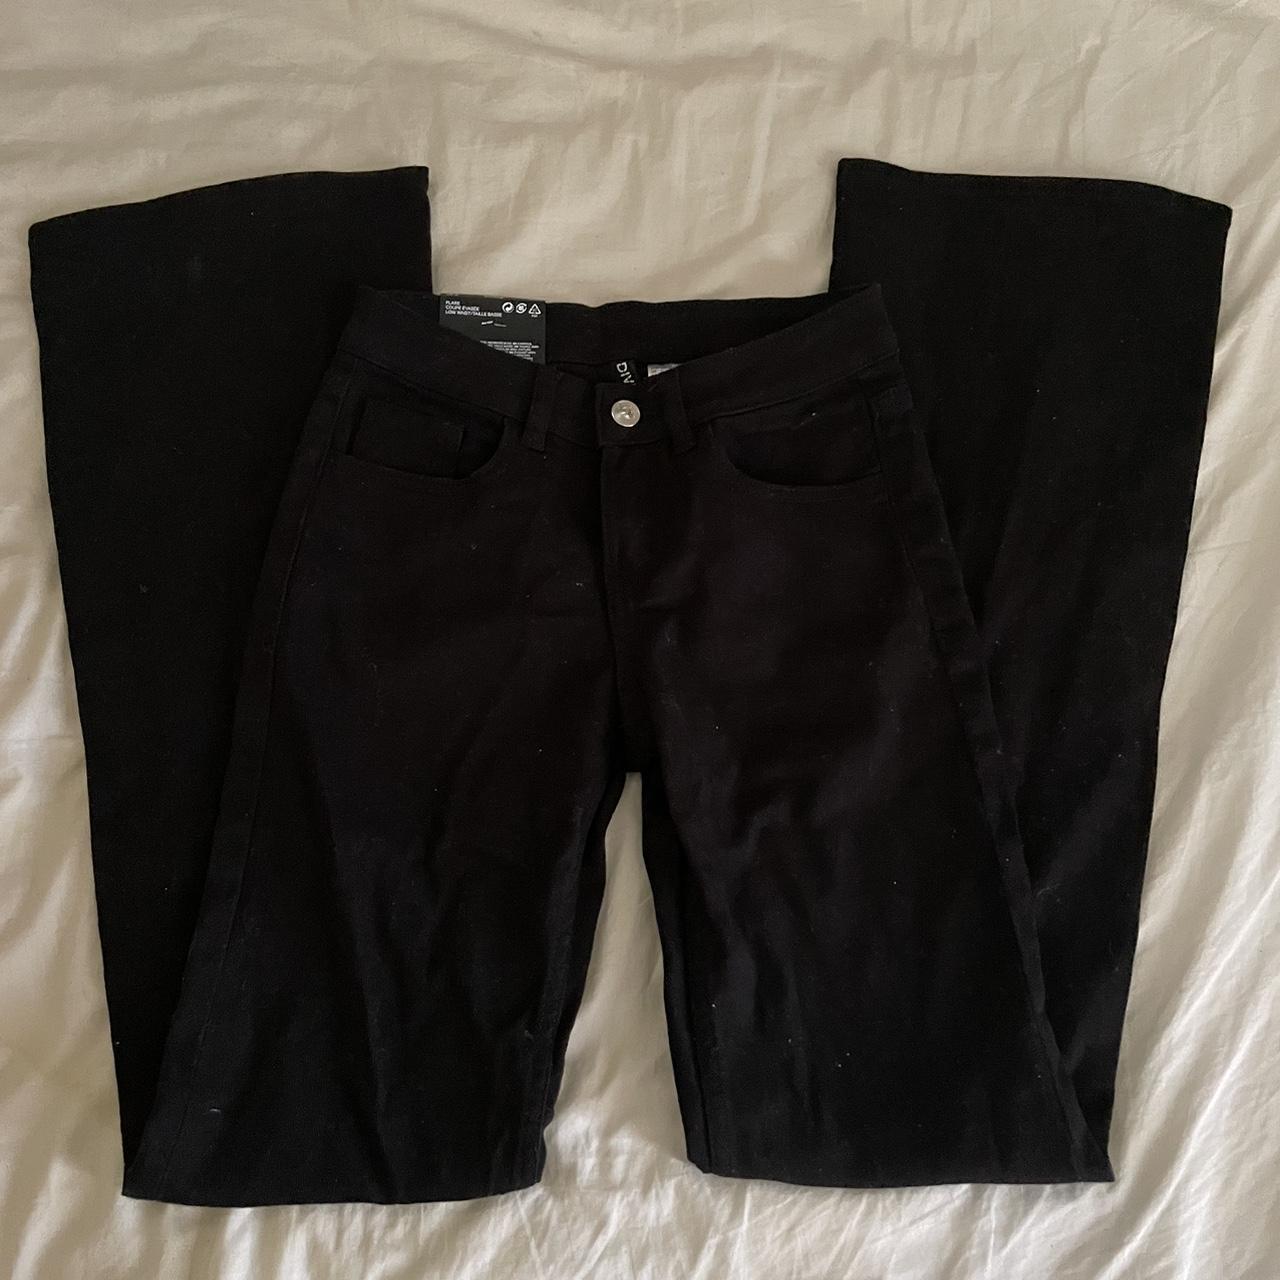 H&M Women's Black Trousers | Depop